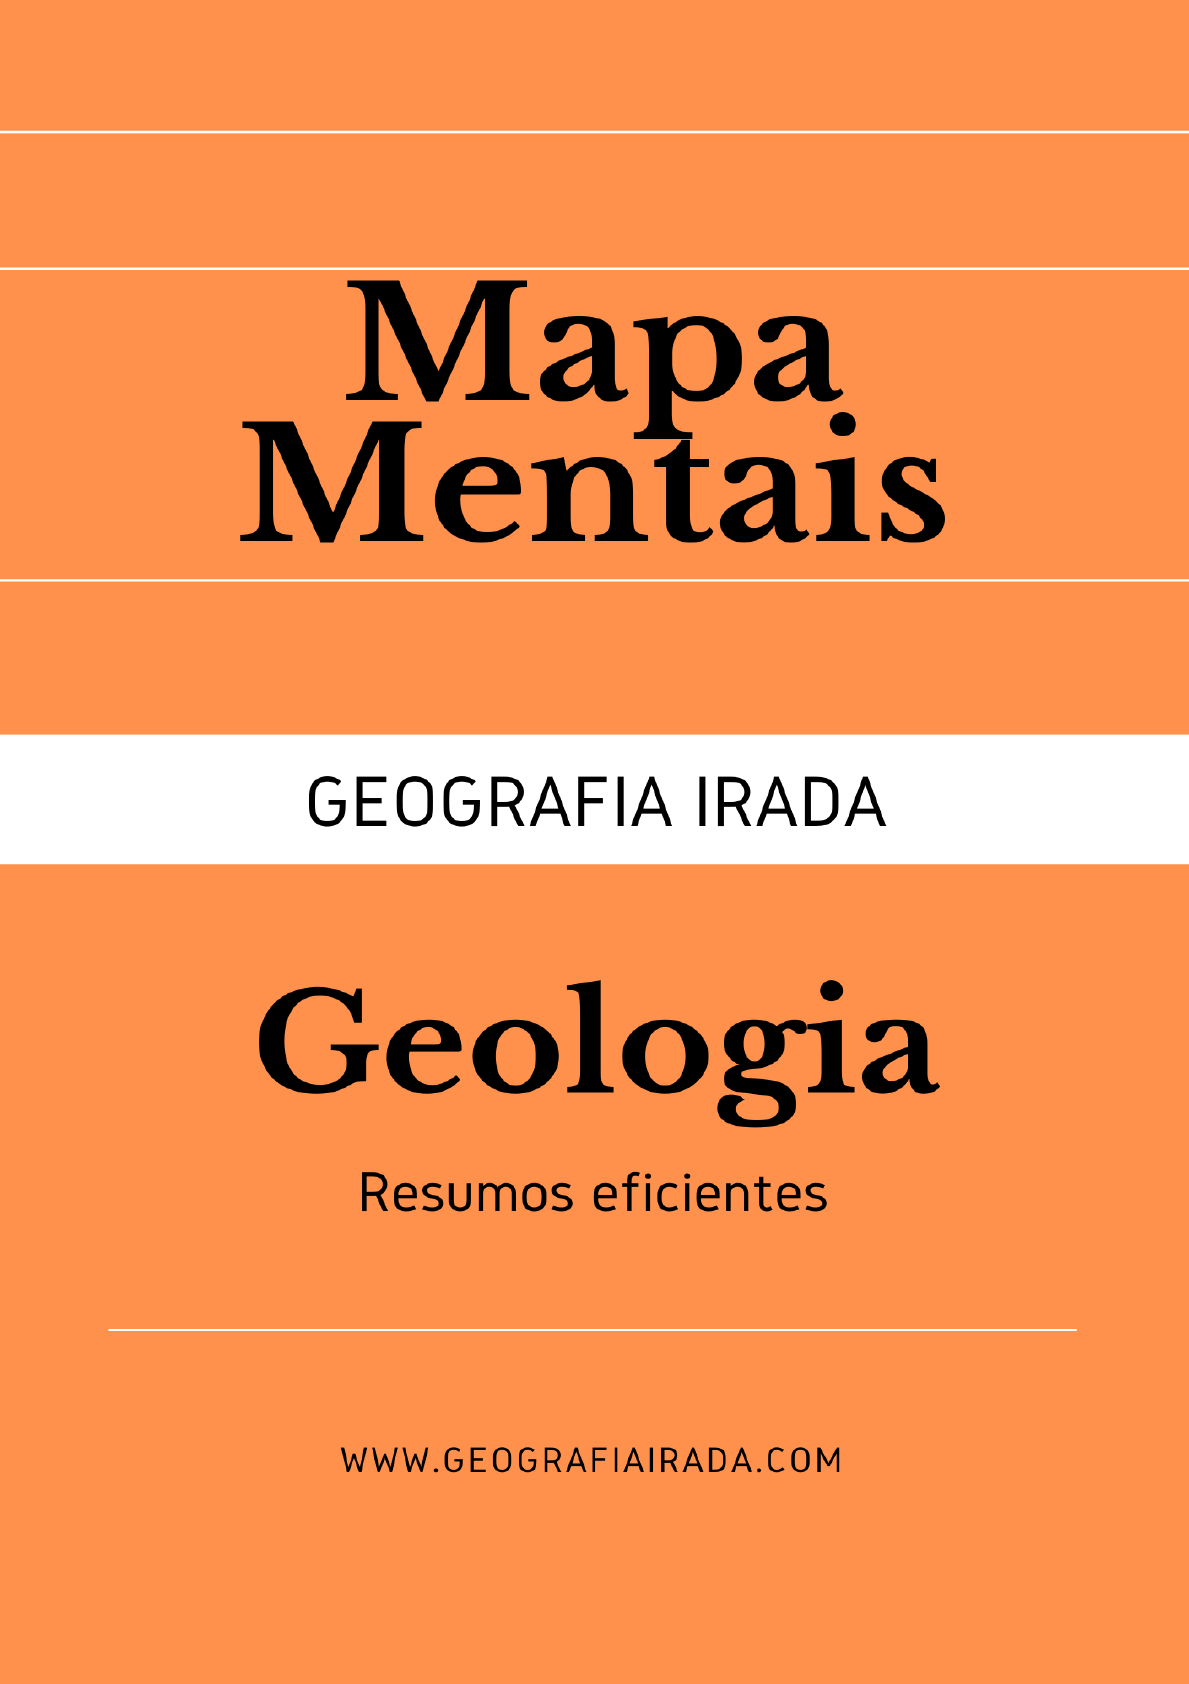 BAIXE E CURTA] MAPA MENTAL GEOLOGIA - Geografia